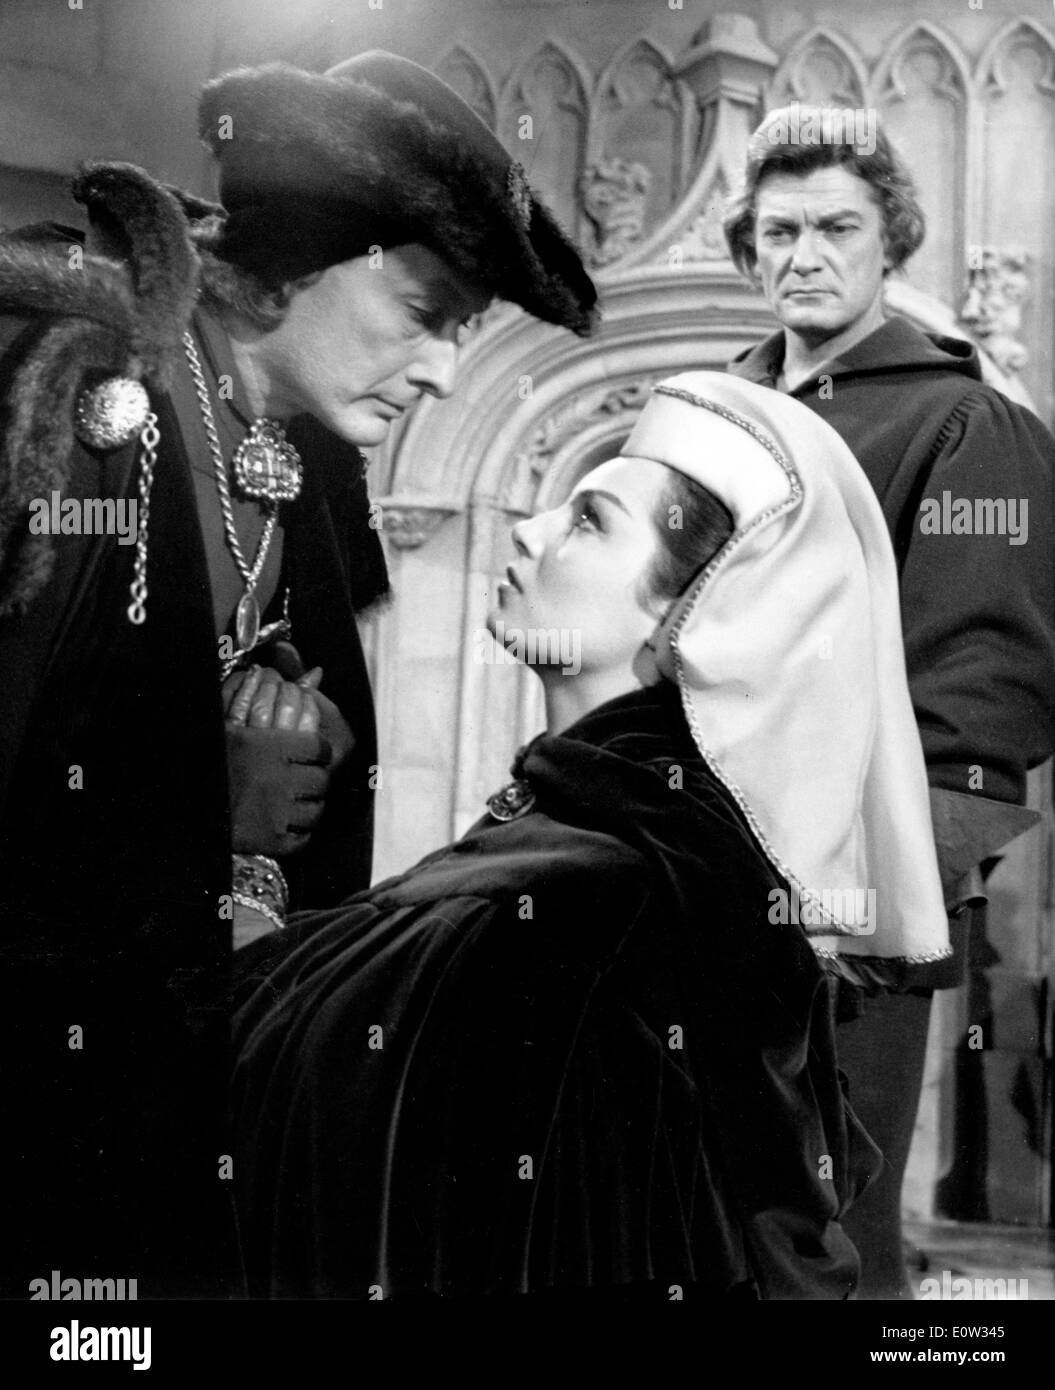 Jean Louis Barrault, Jean Marais and Rosanna Schiaffino in a film Stock Photo